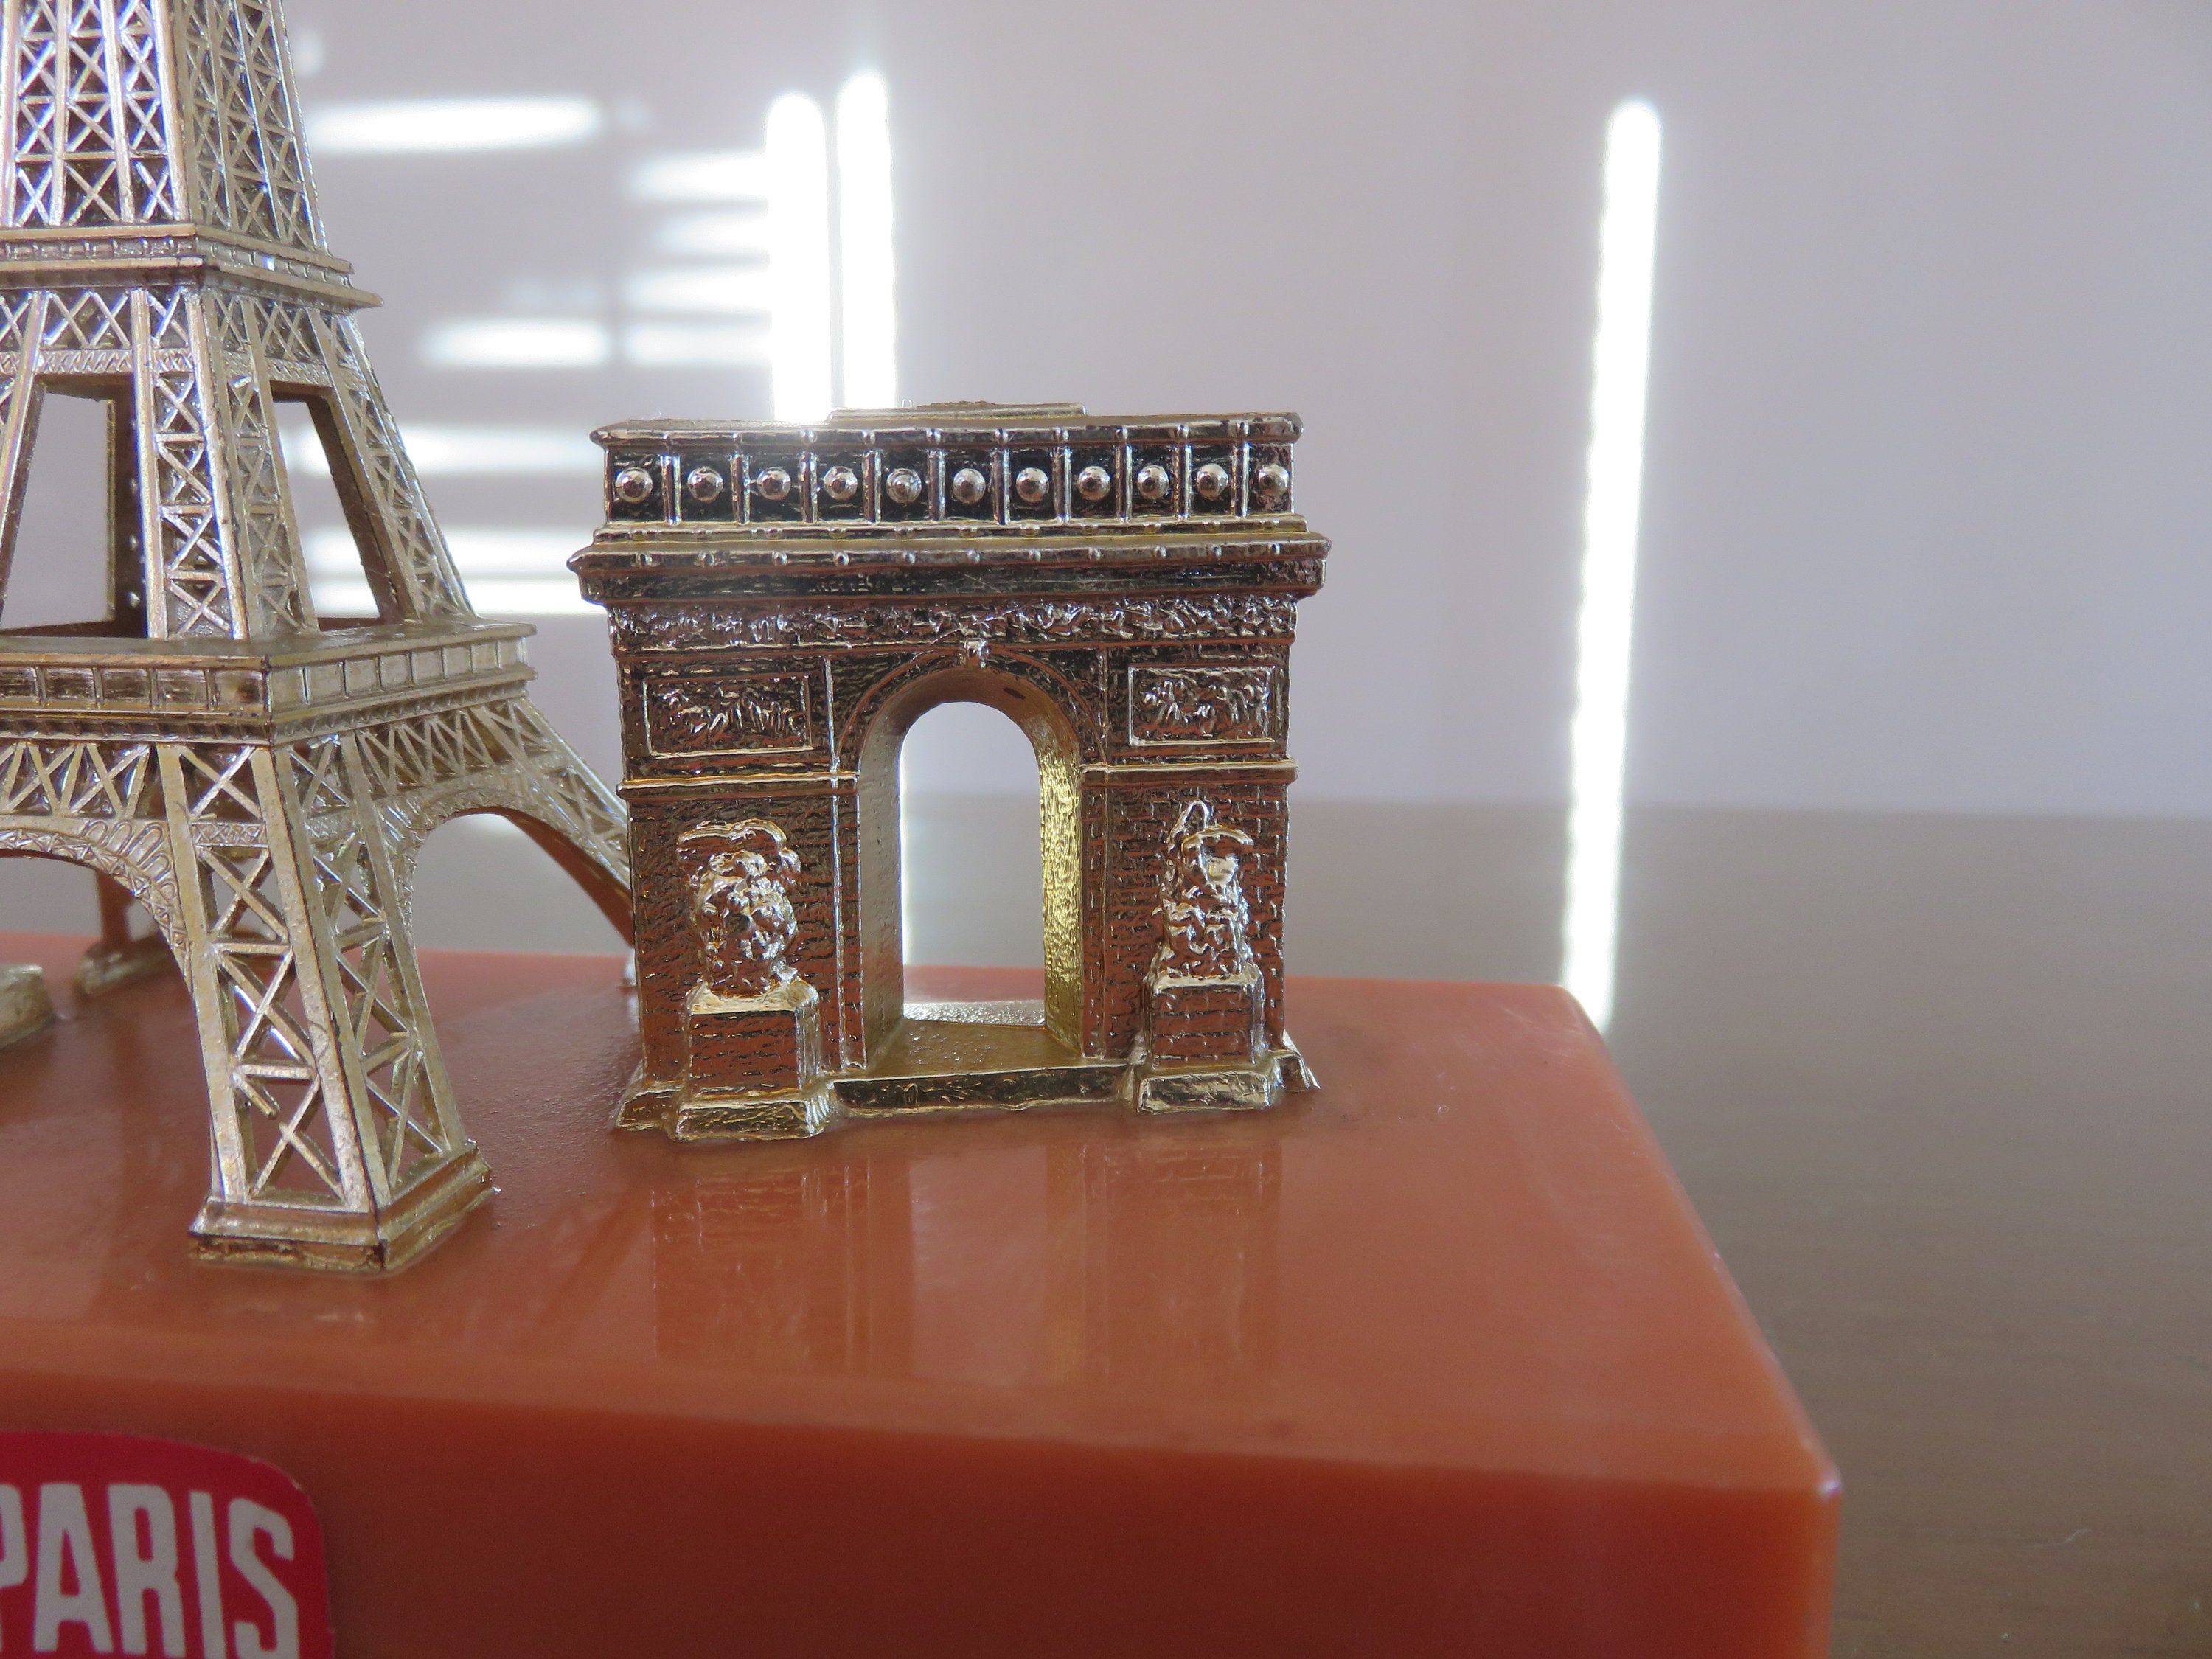 PARIS Magnet BOTTLE OPENER EIFFEL TOWER ARC DE TRIOMPHE NOTRE DAME SACRE COEUR! 